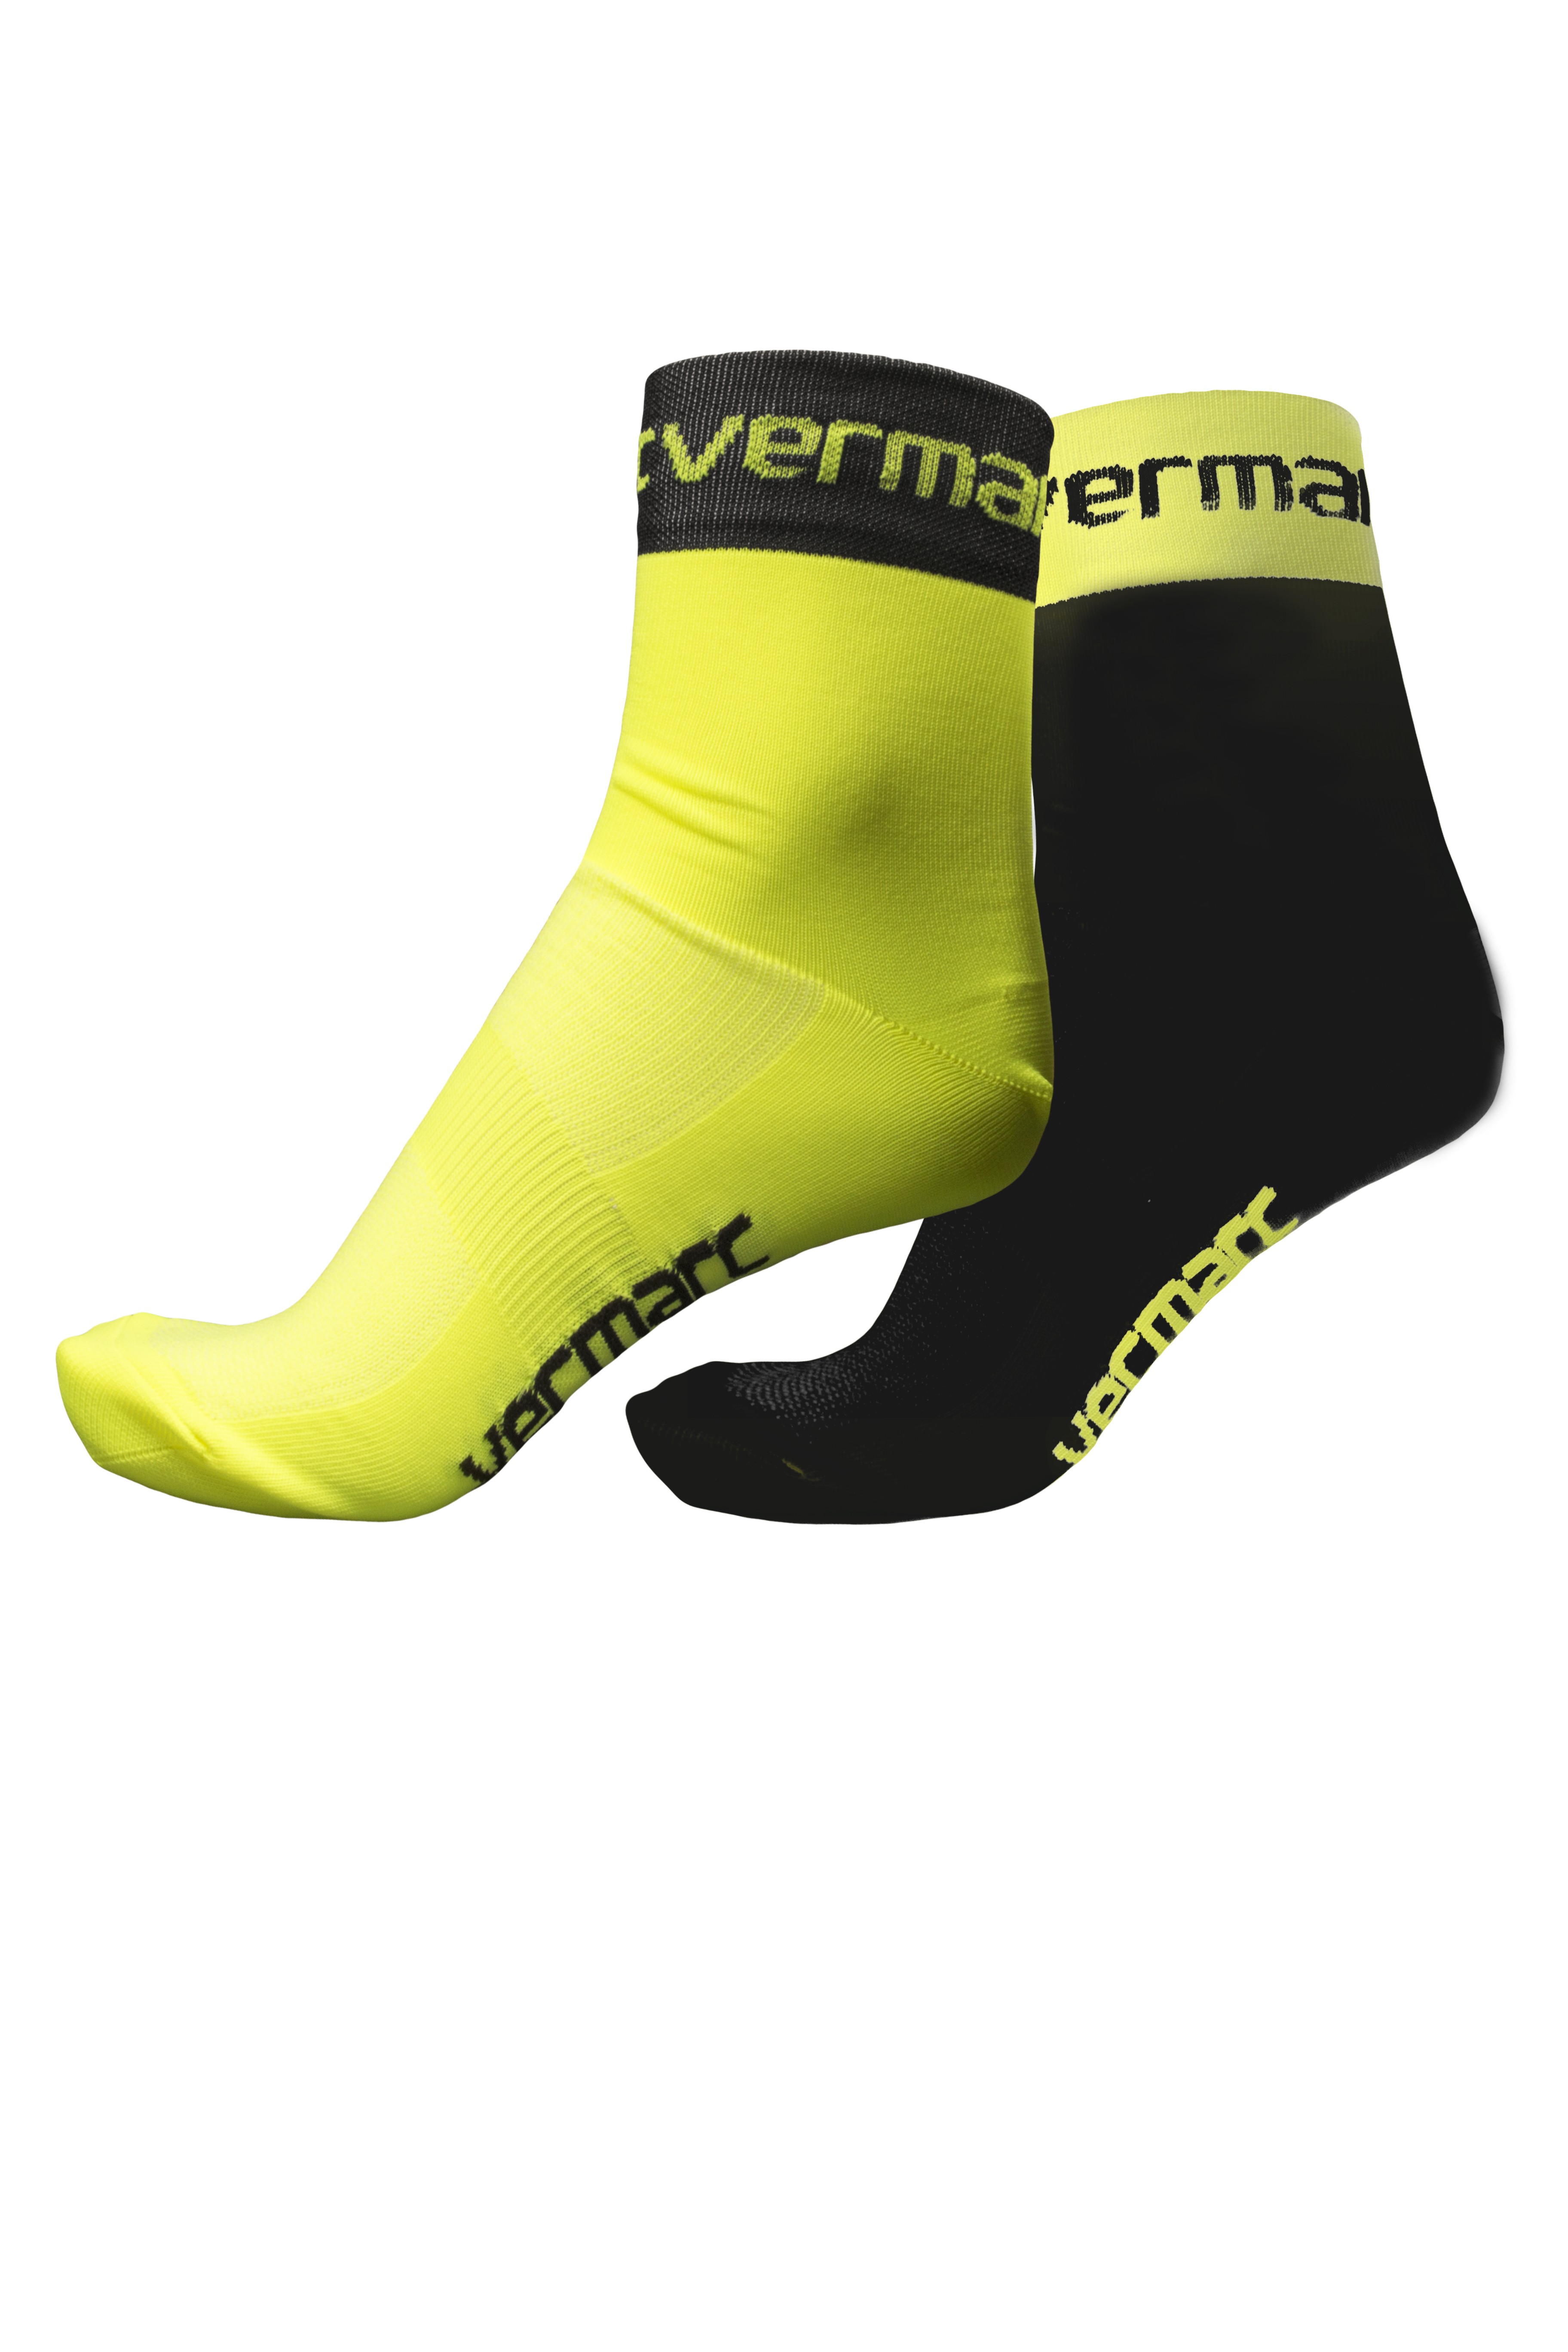 Vermarc squadra fietssok zwart fluo geel